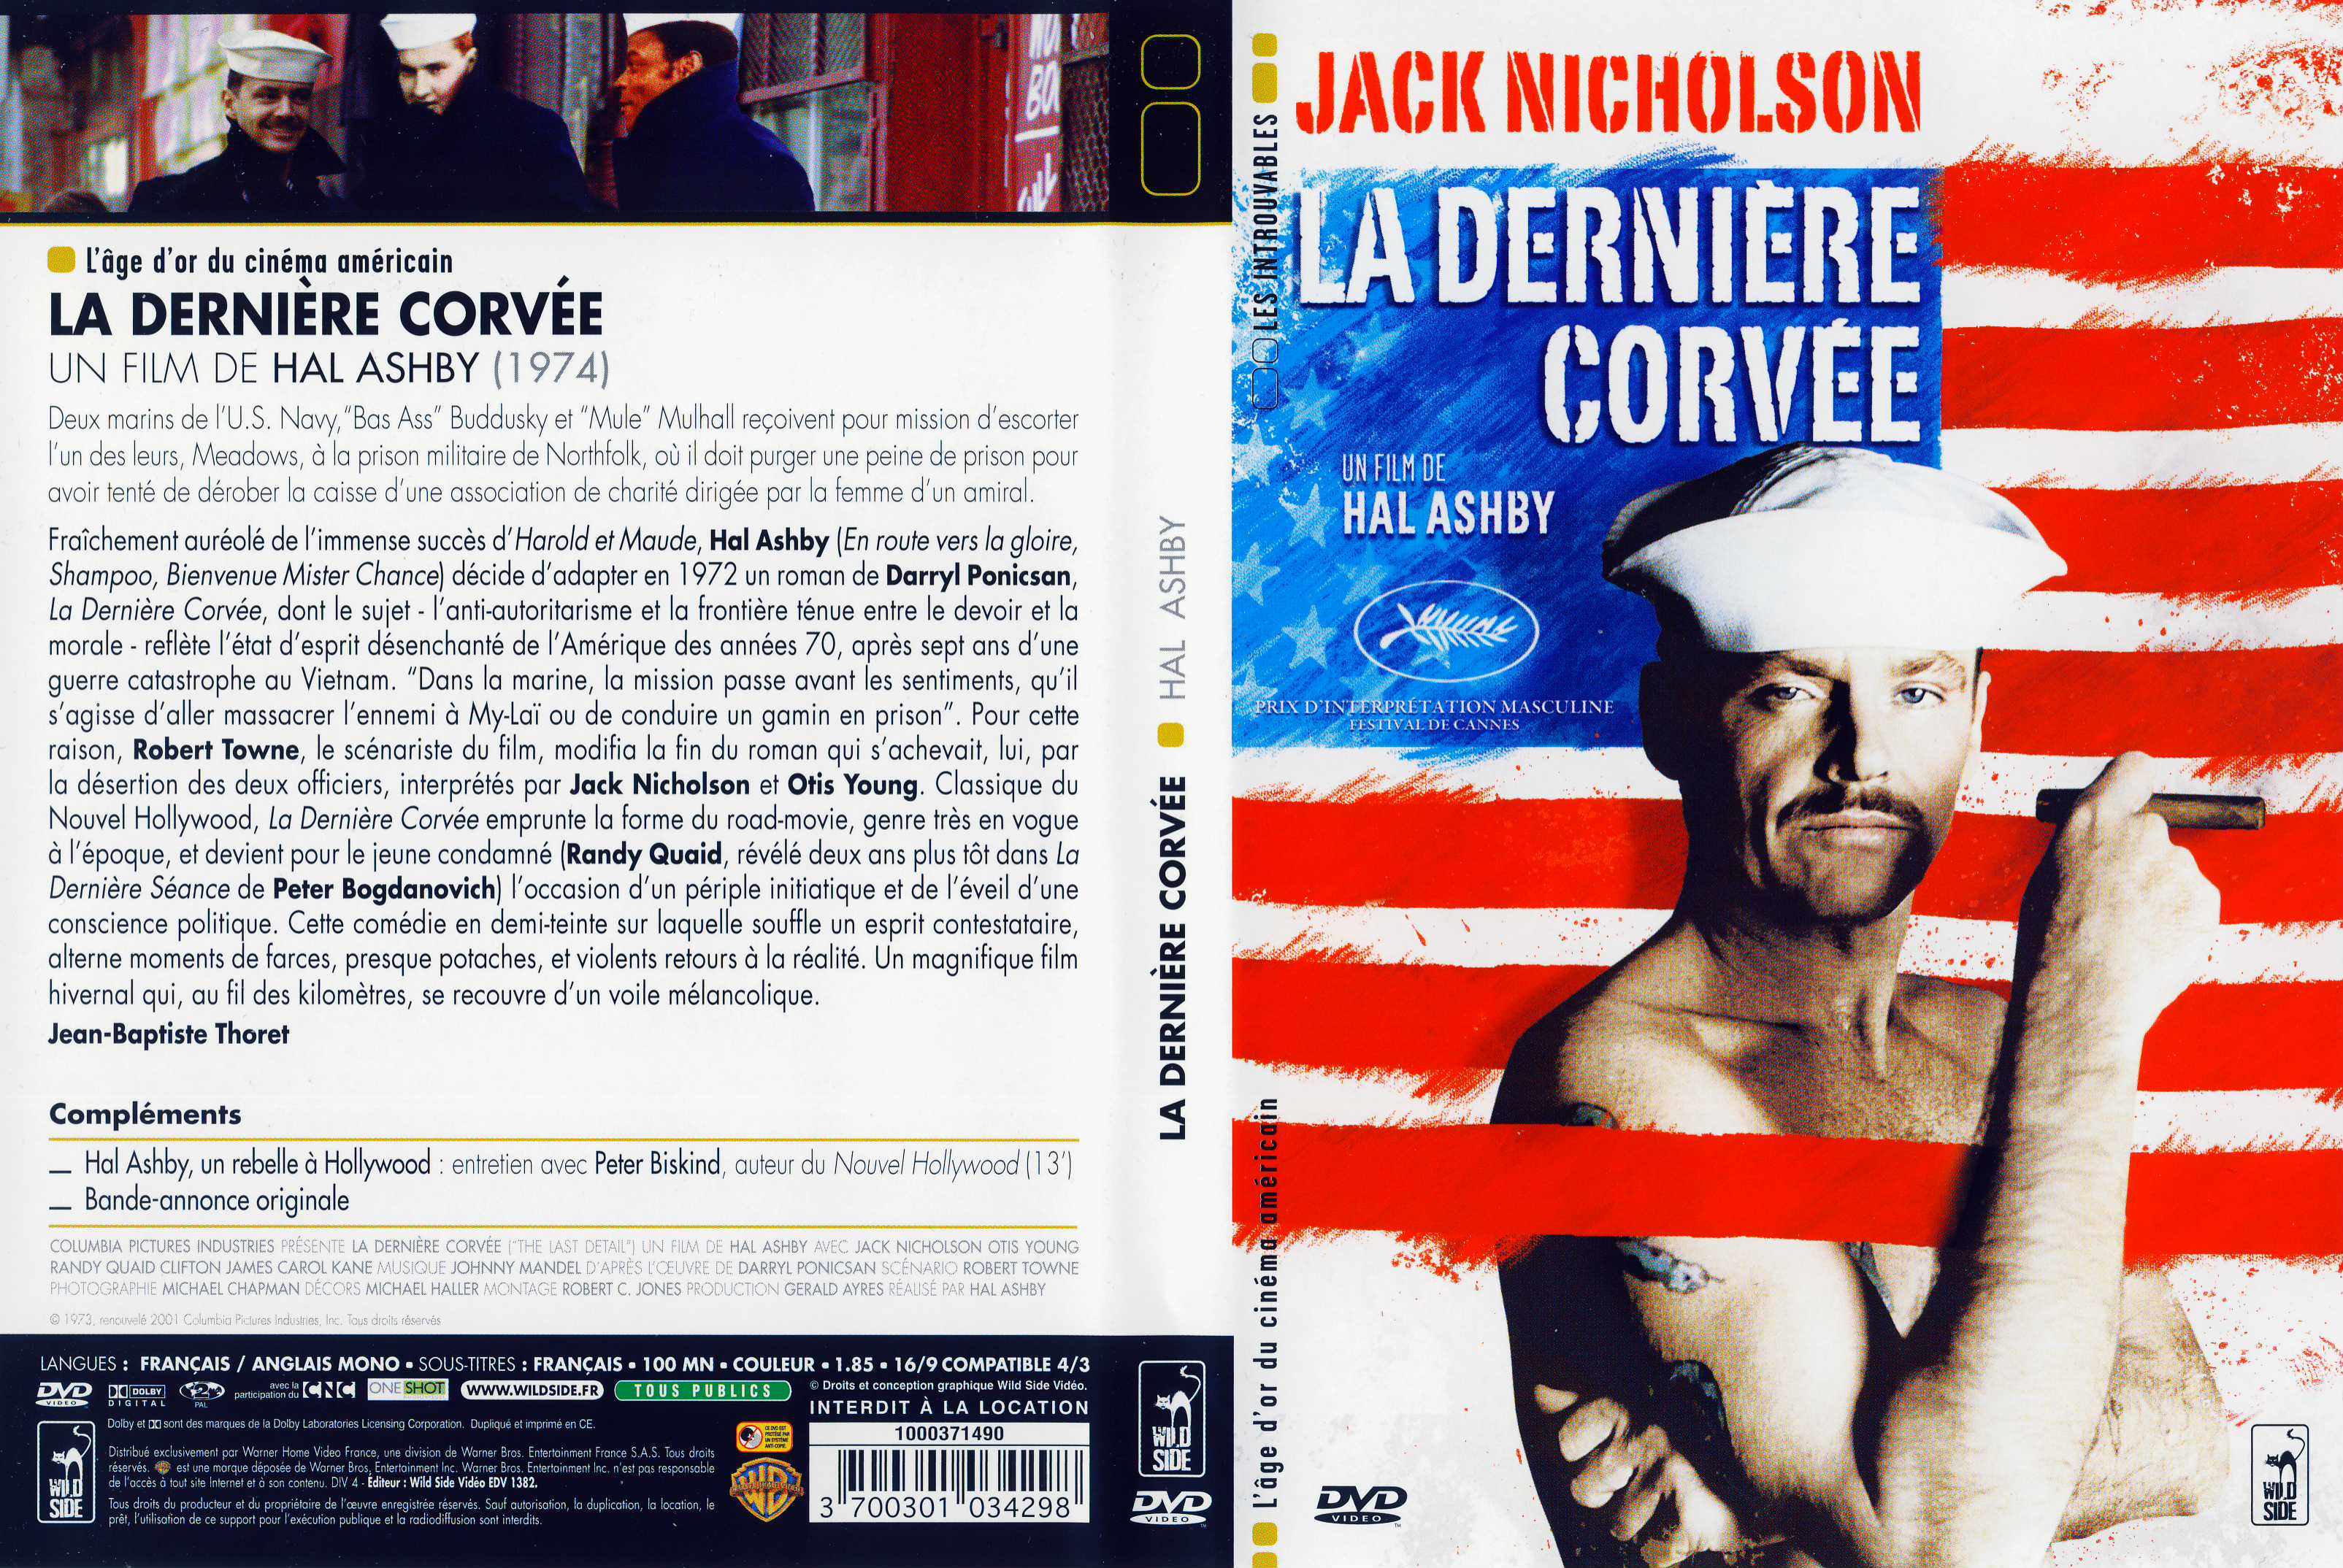 Jaquette DVD La dernire corve v2